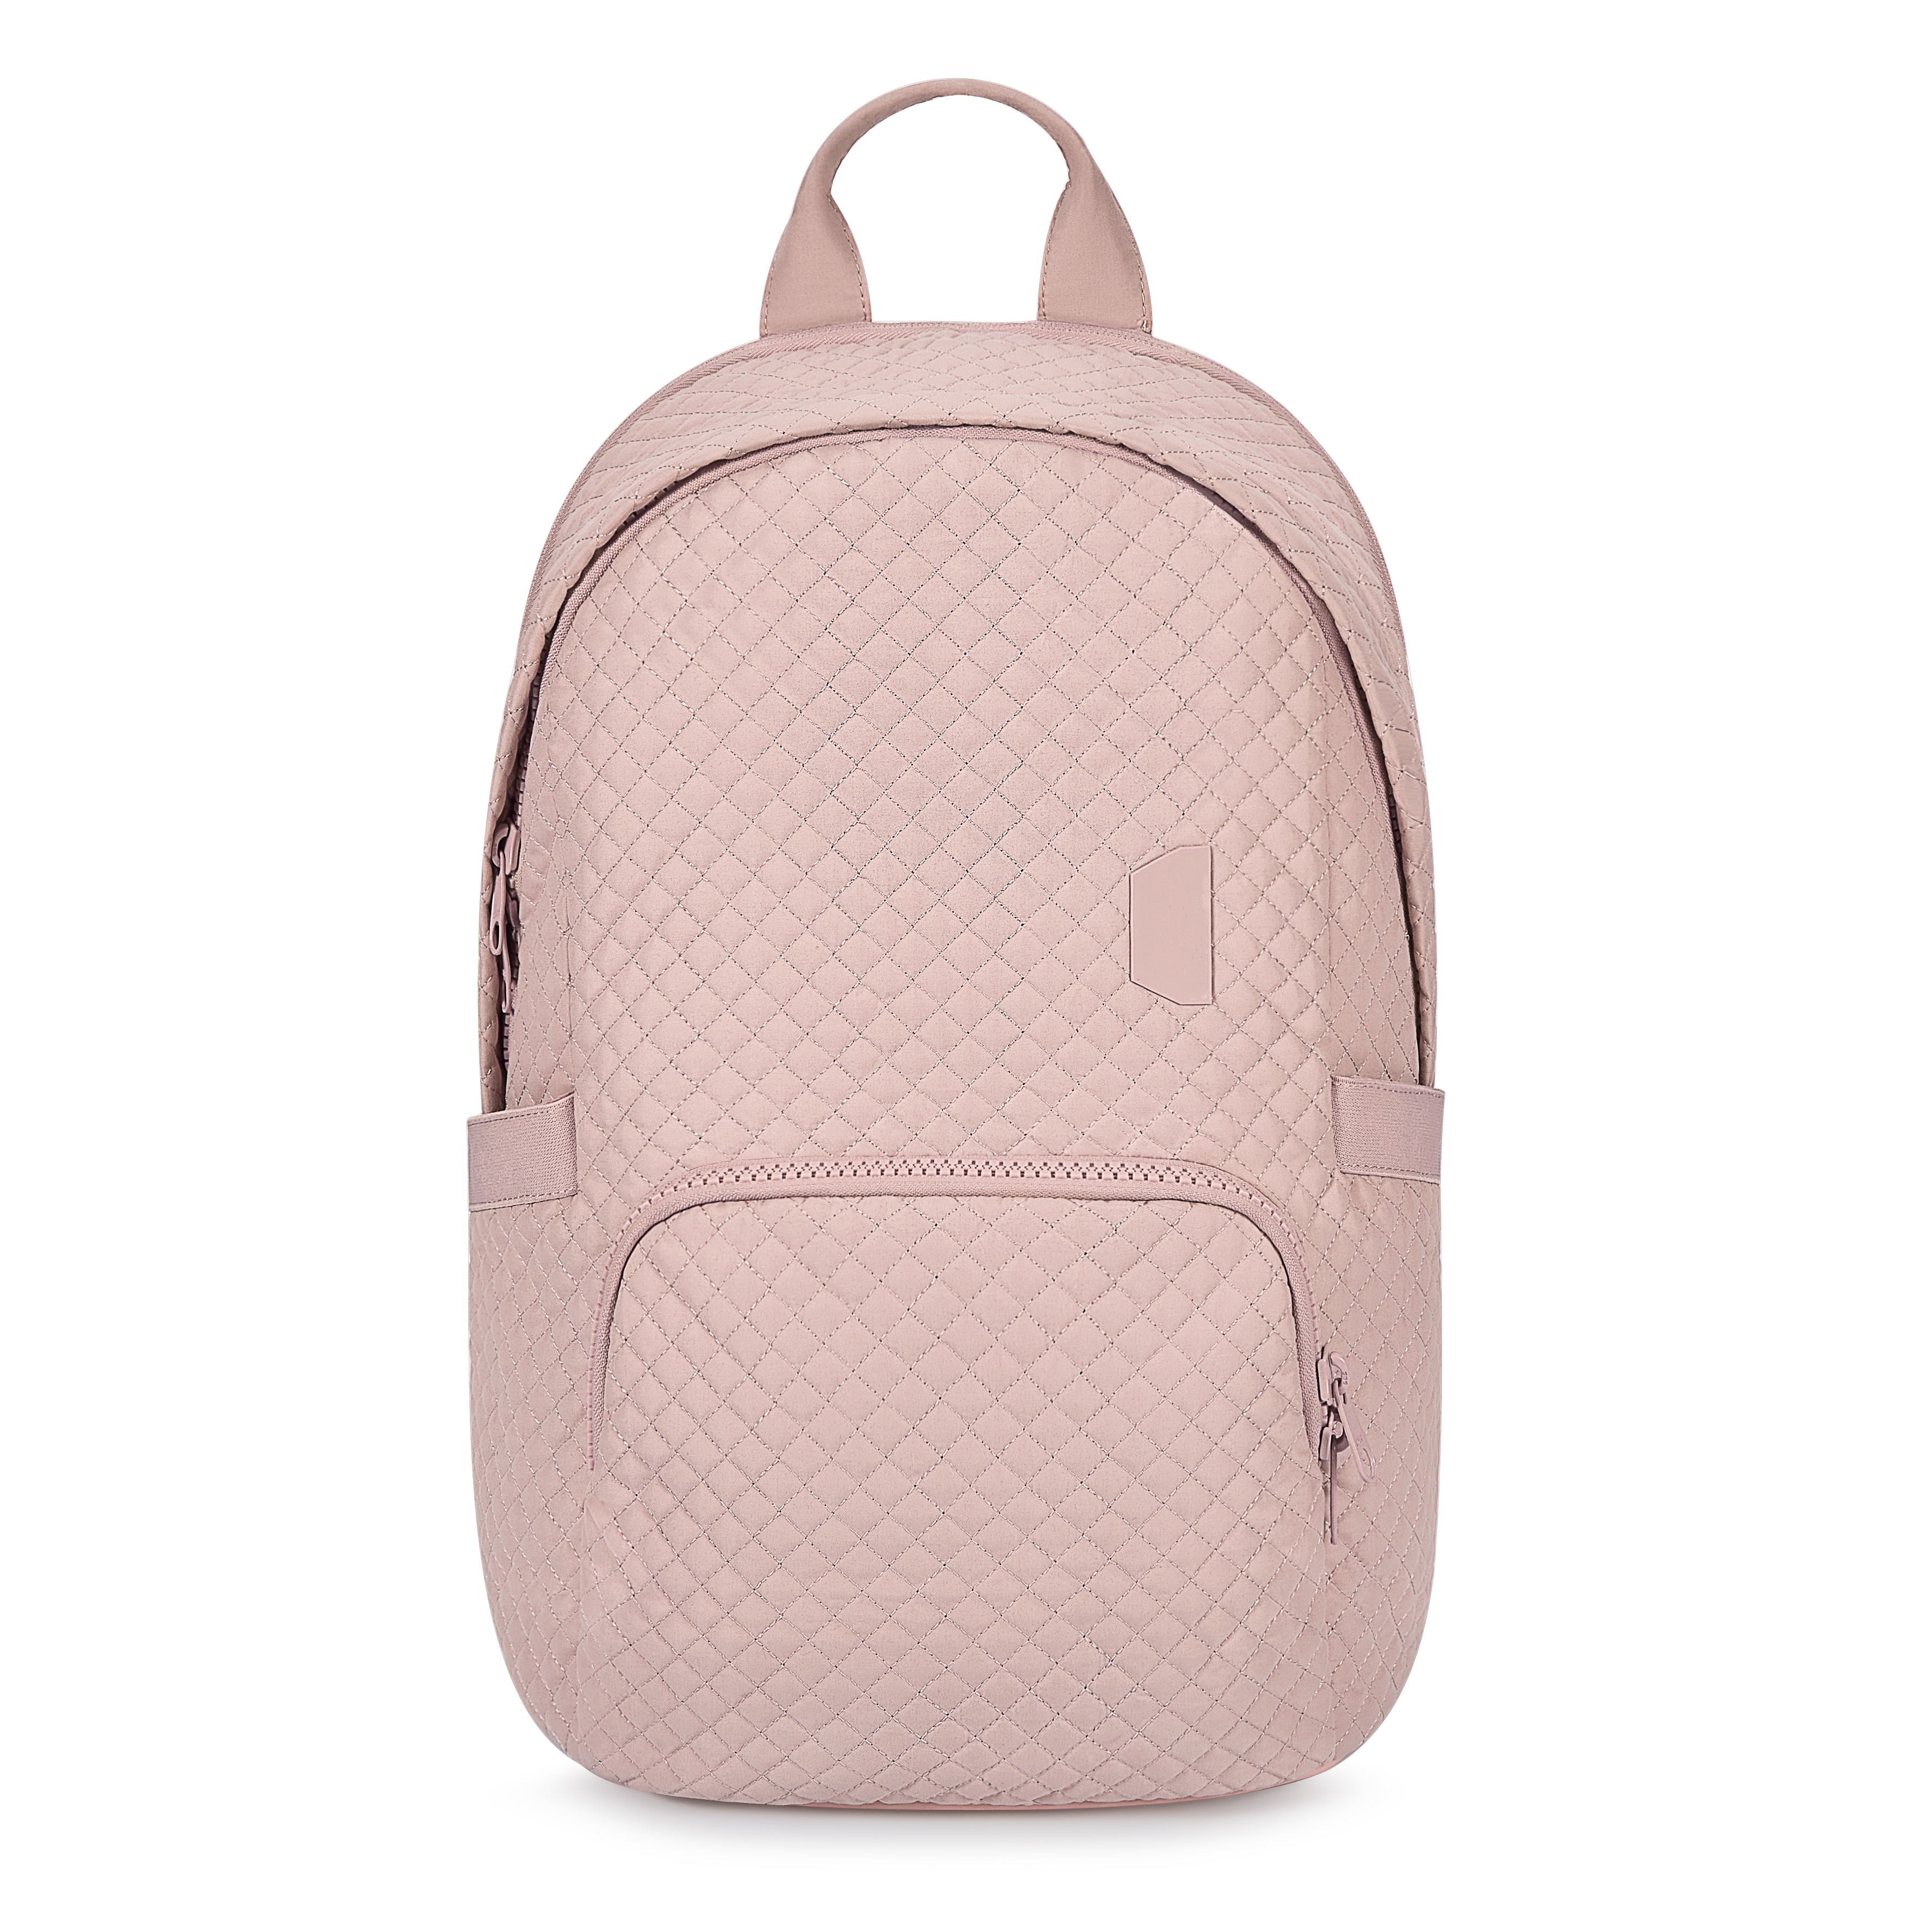 Waterproof Laptop Backpack For Women